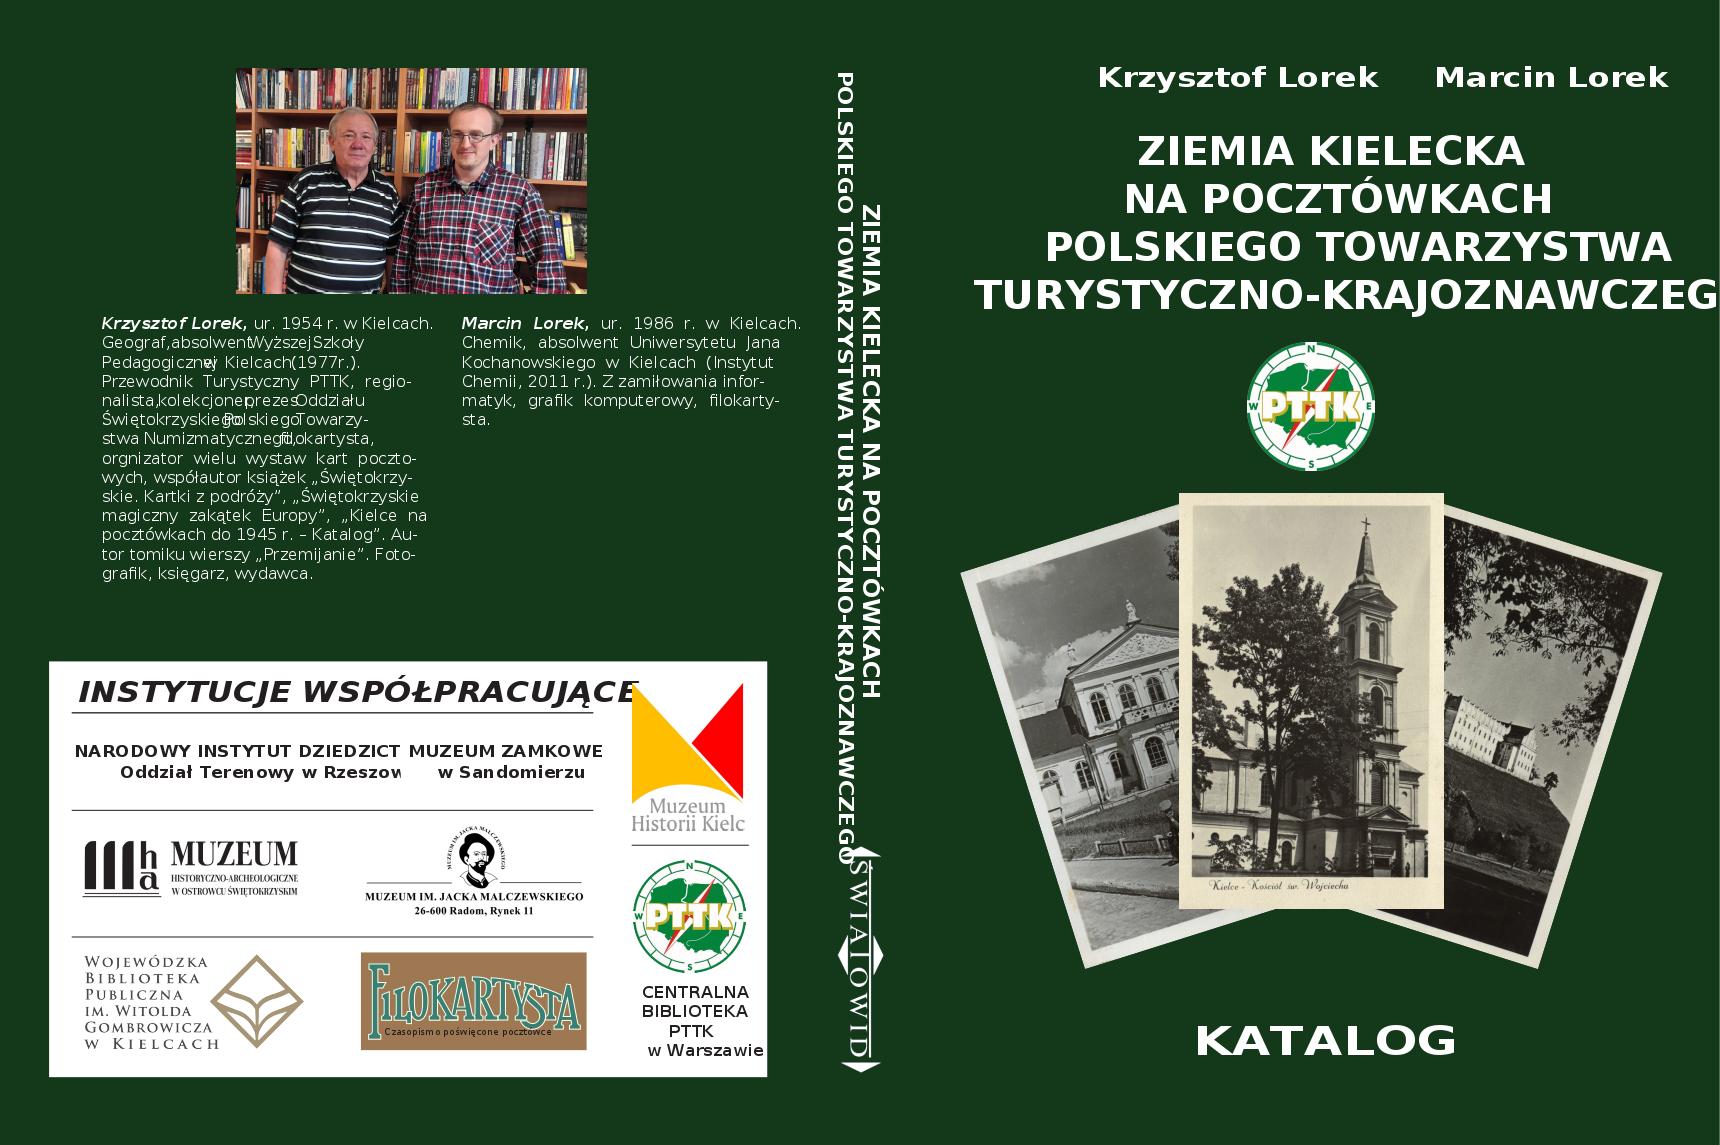 Okładka książki „Ziemia kielecka na pocztówkach Polskiego Towarzystwa Turystyczno-Krajoznawczego” / Źródło: Krzysztof Lorek